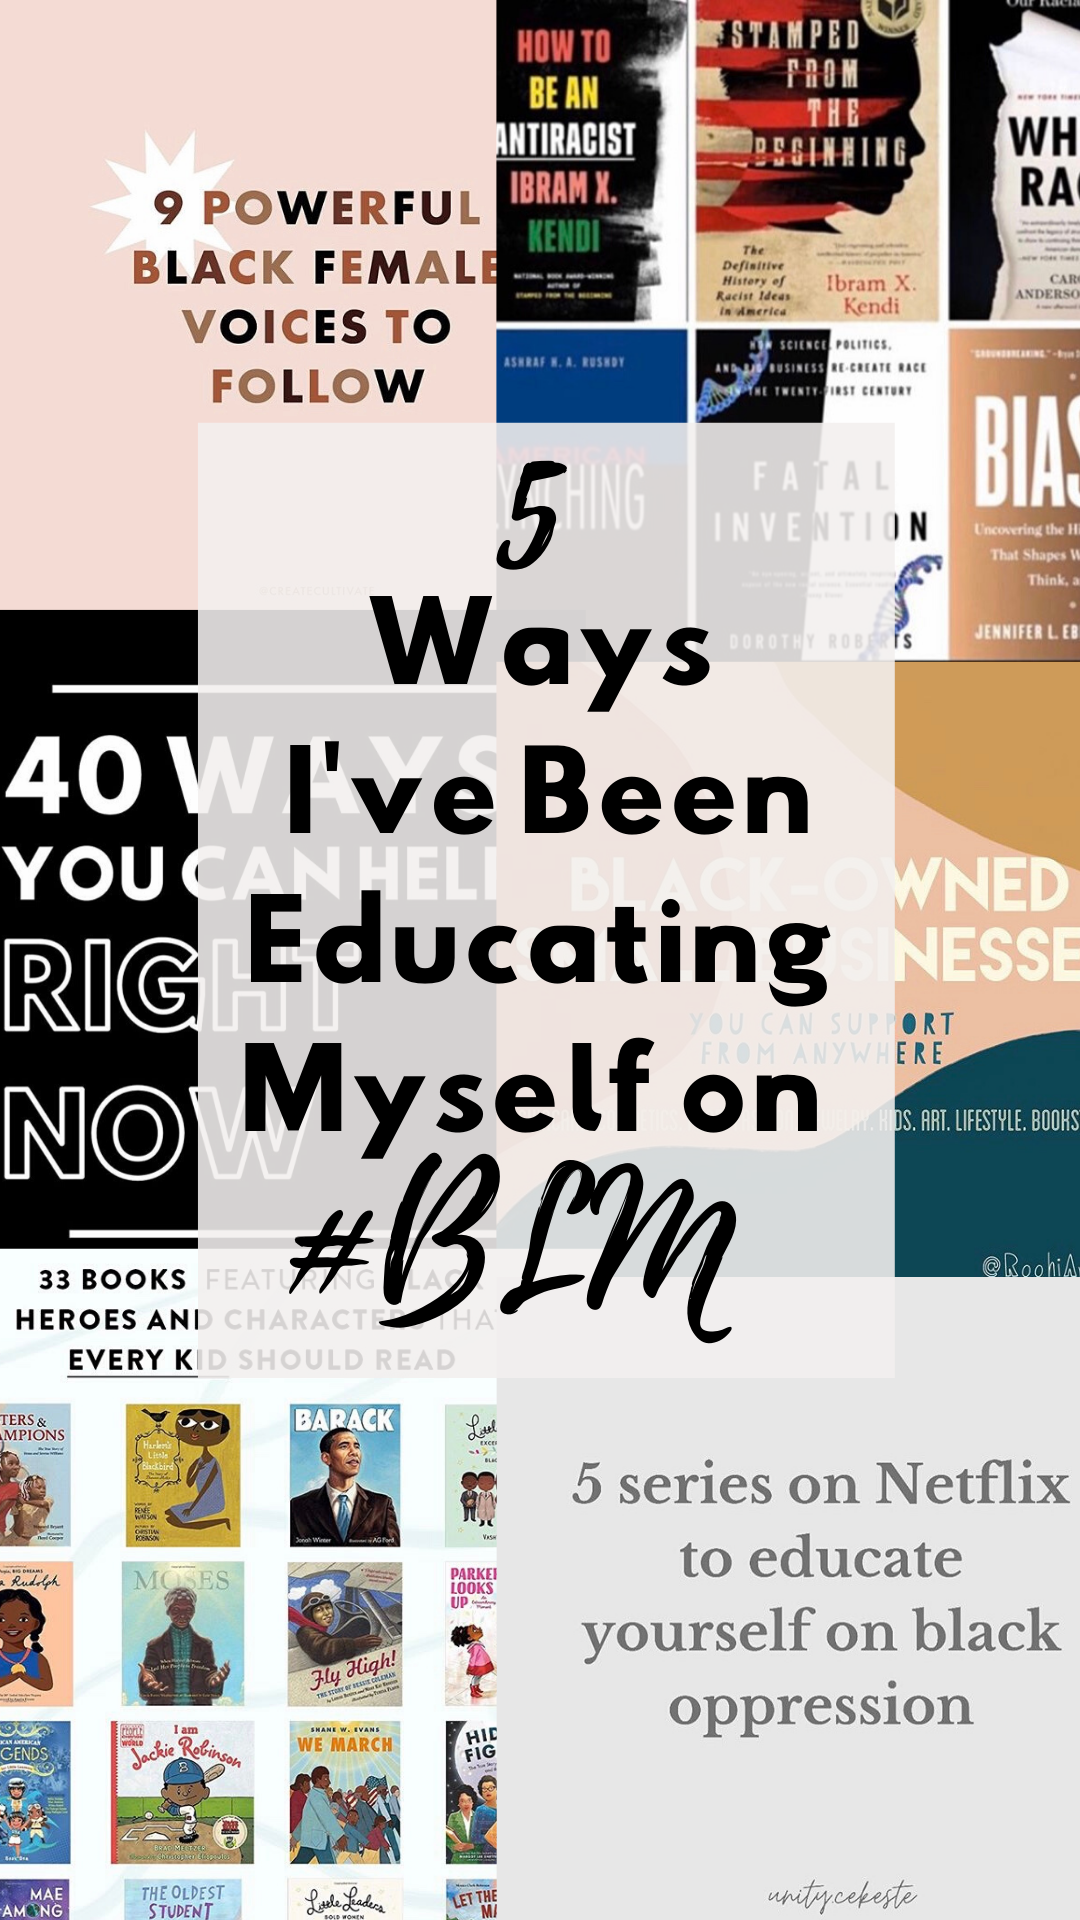 5 Ways I've Been Educating Myself on #BlackLivesMatter